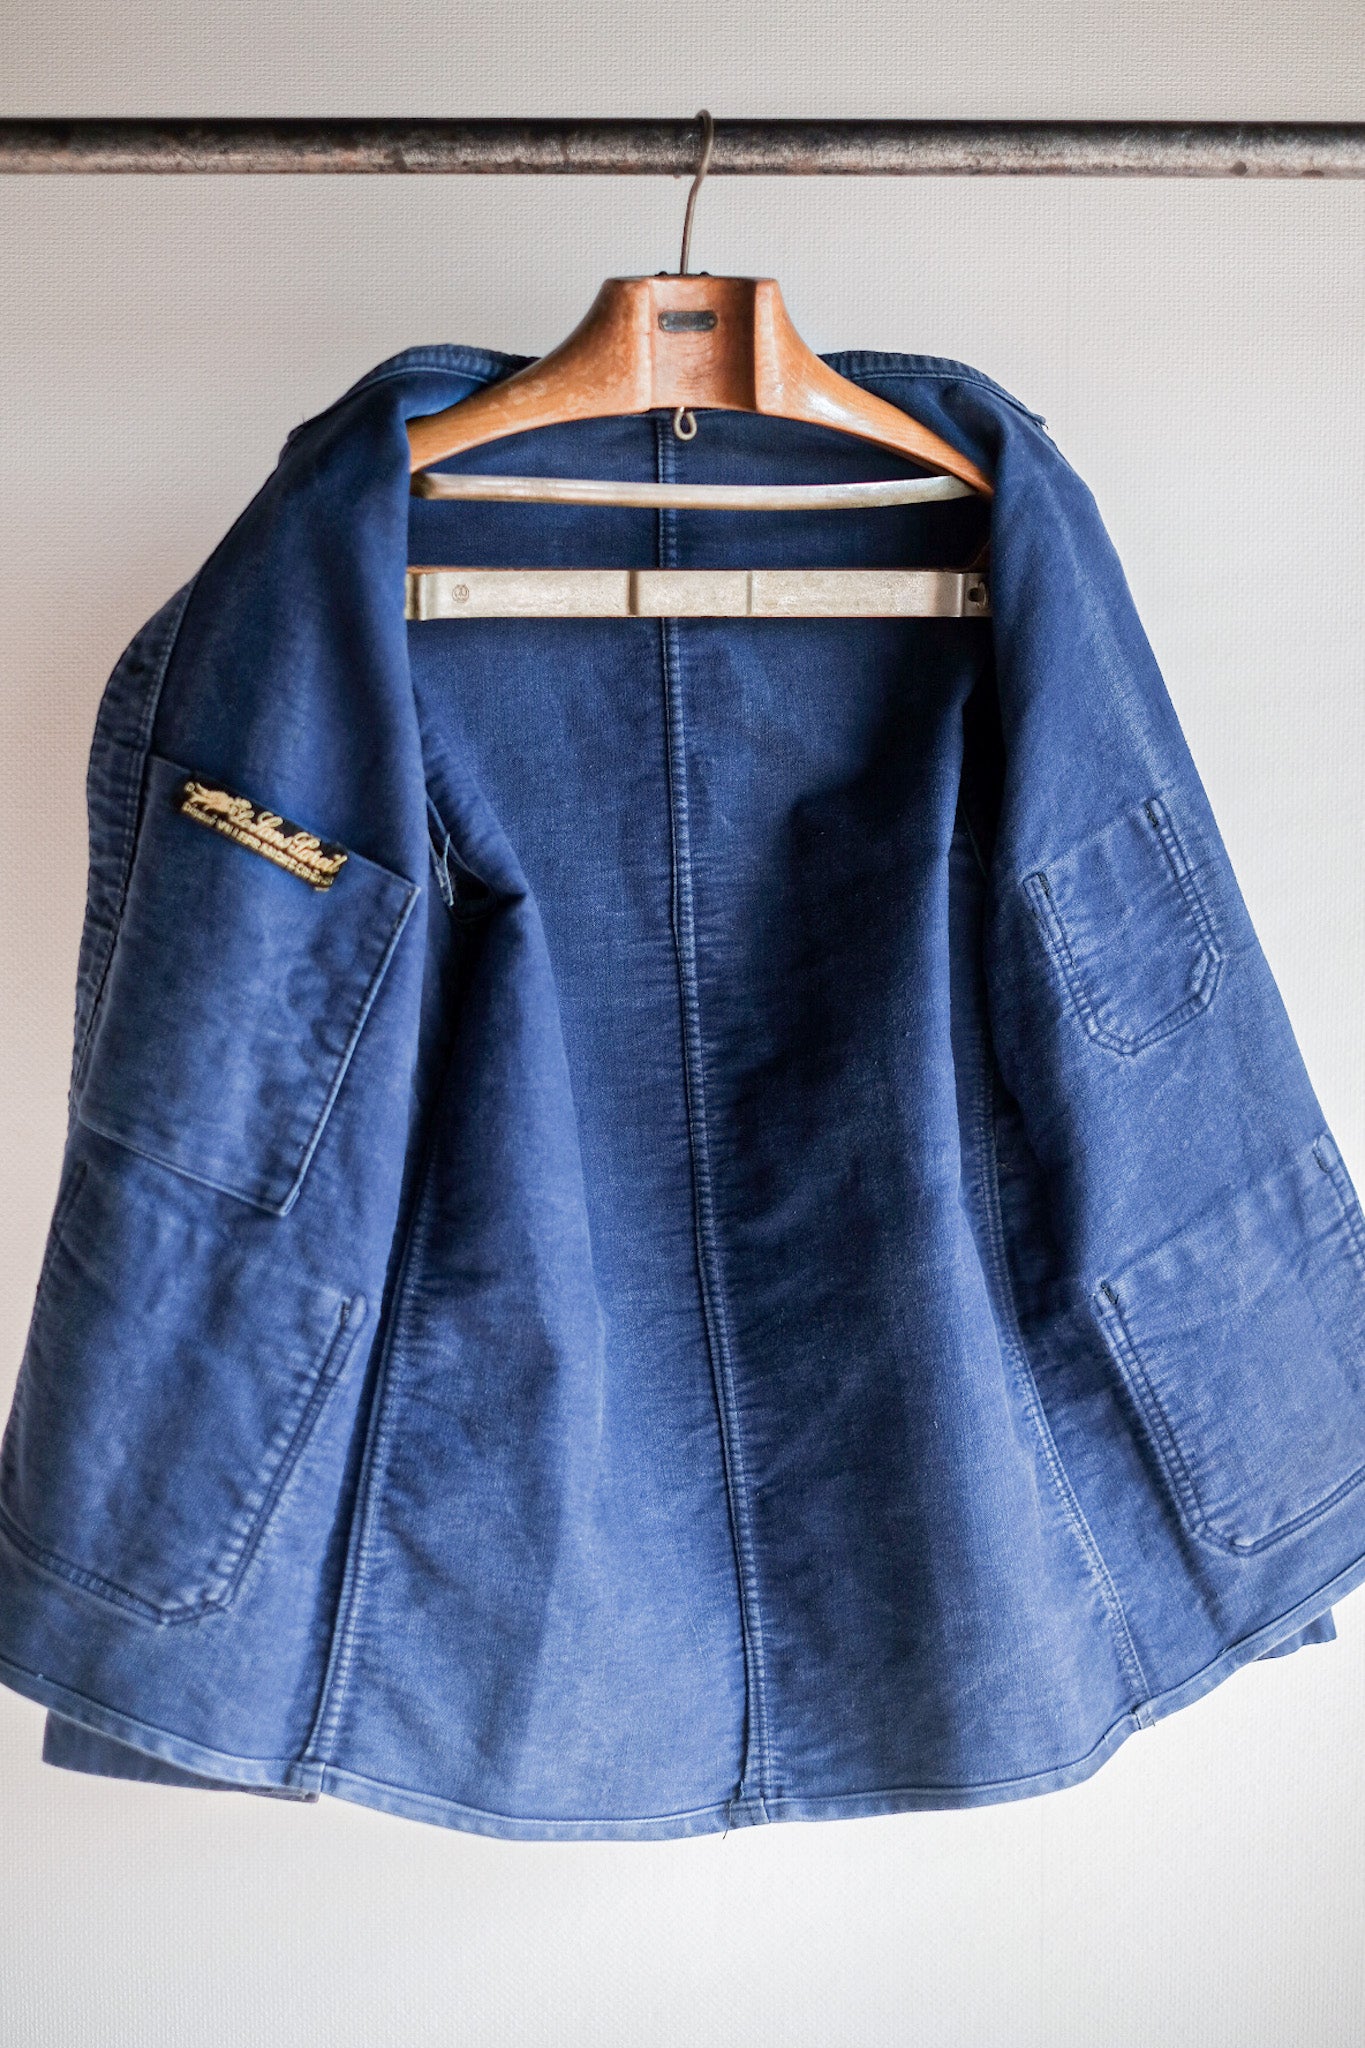 [~ 40 '] 프랑스 빈티지 블루 몰스 피부 작업 재킷